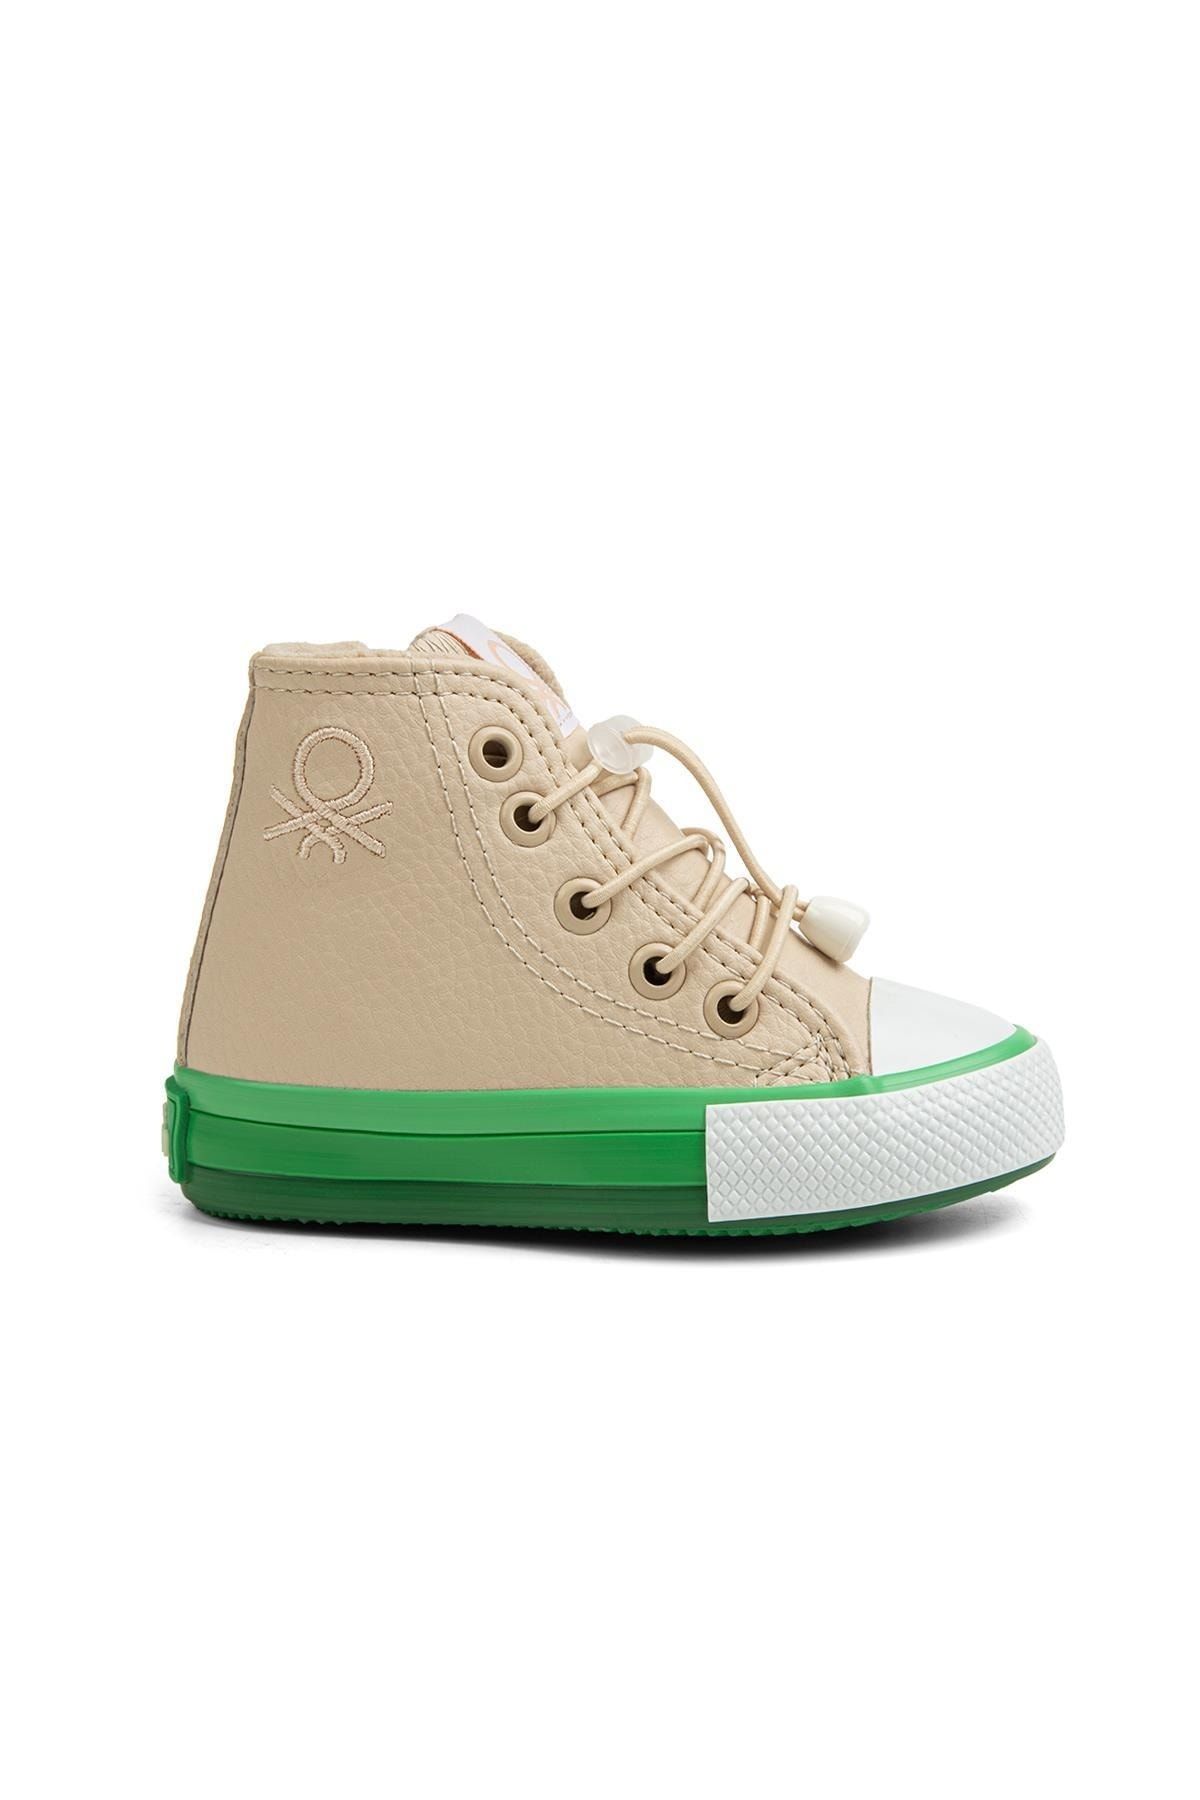 Benetton ® | Bn-30814- 3394 Bej - Çocuk Spor Ayakkabı